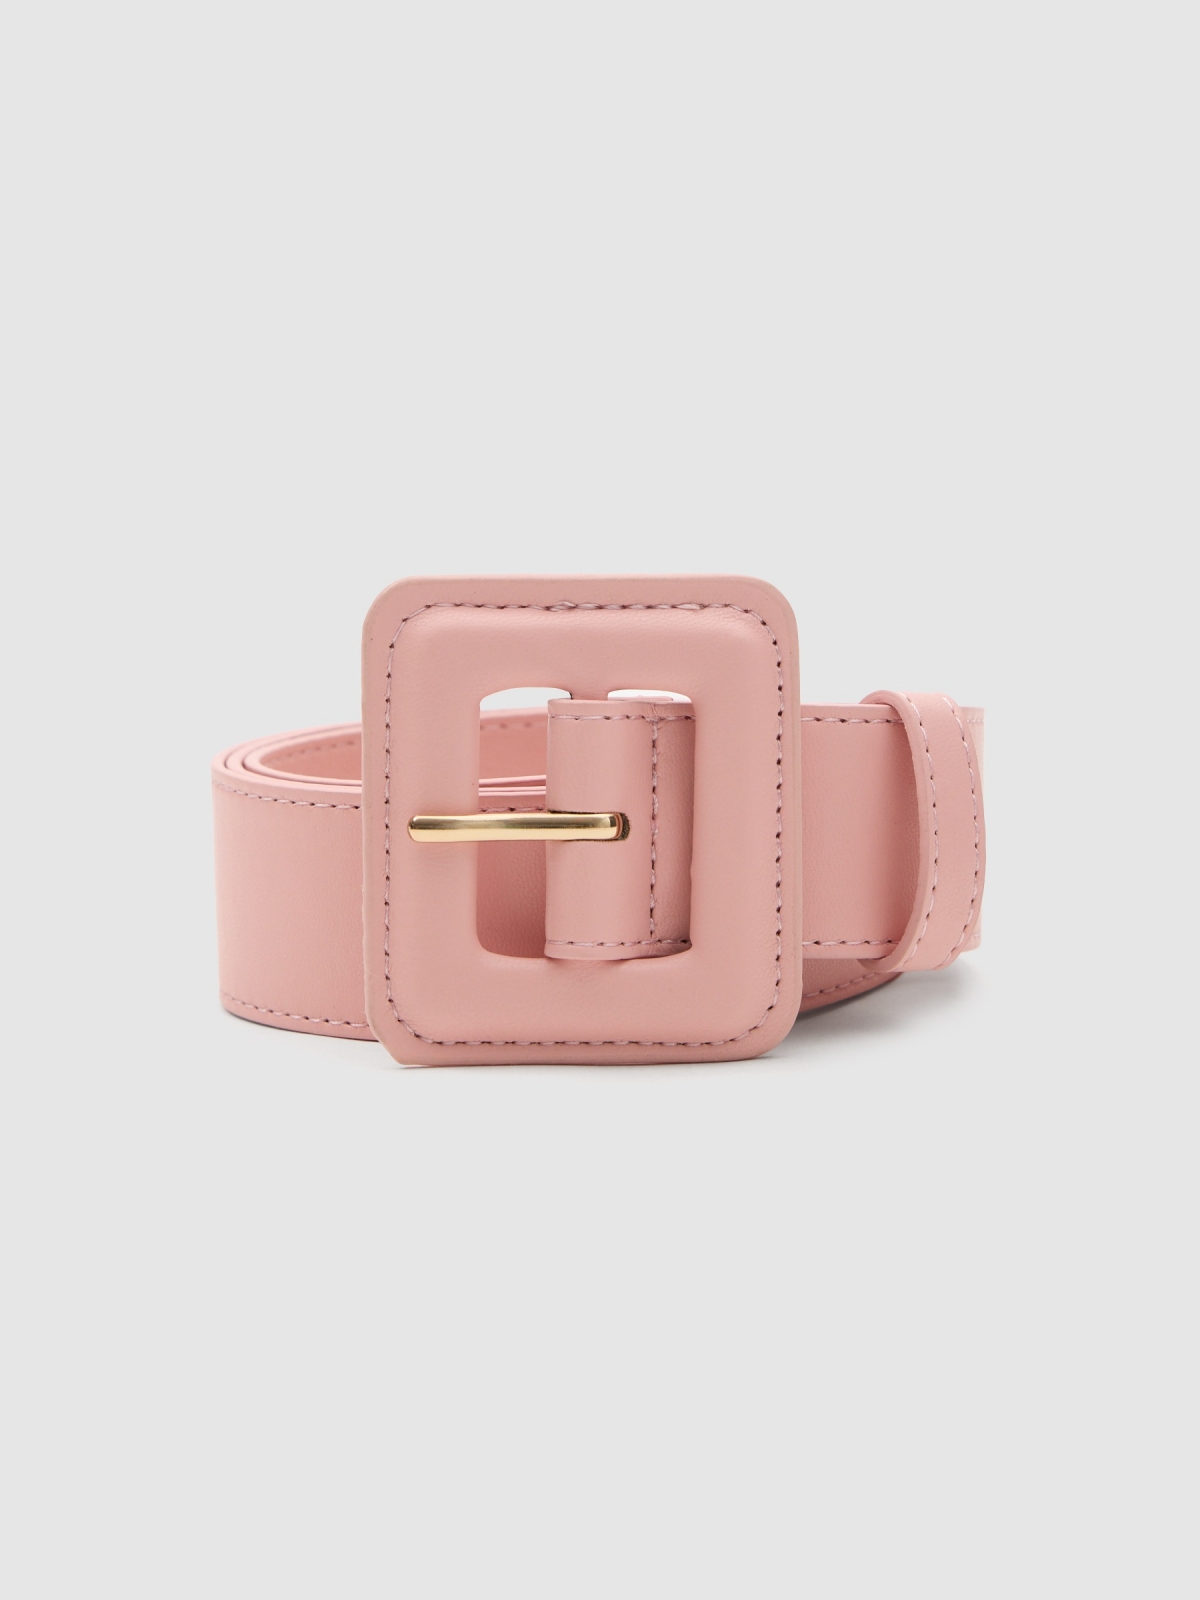 Cinturón hebilla cuadrada rosa claro